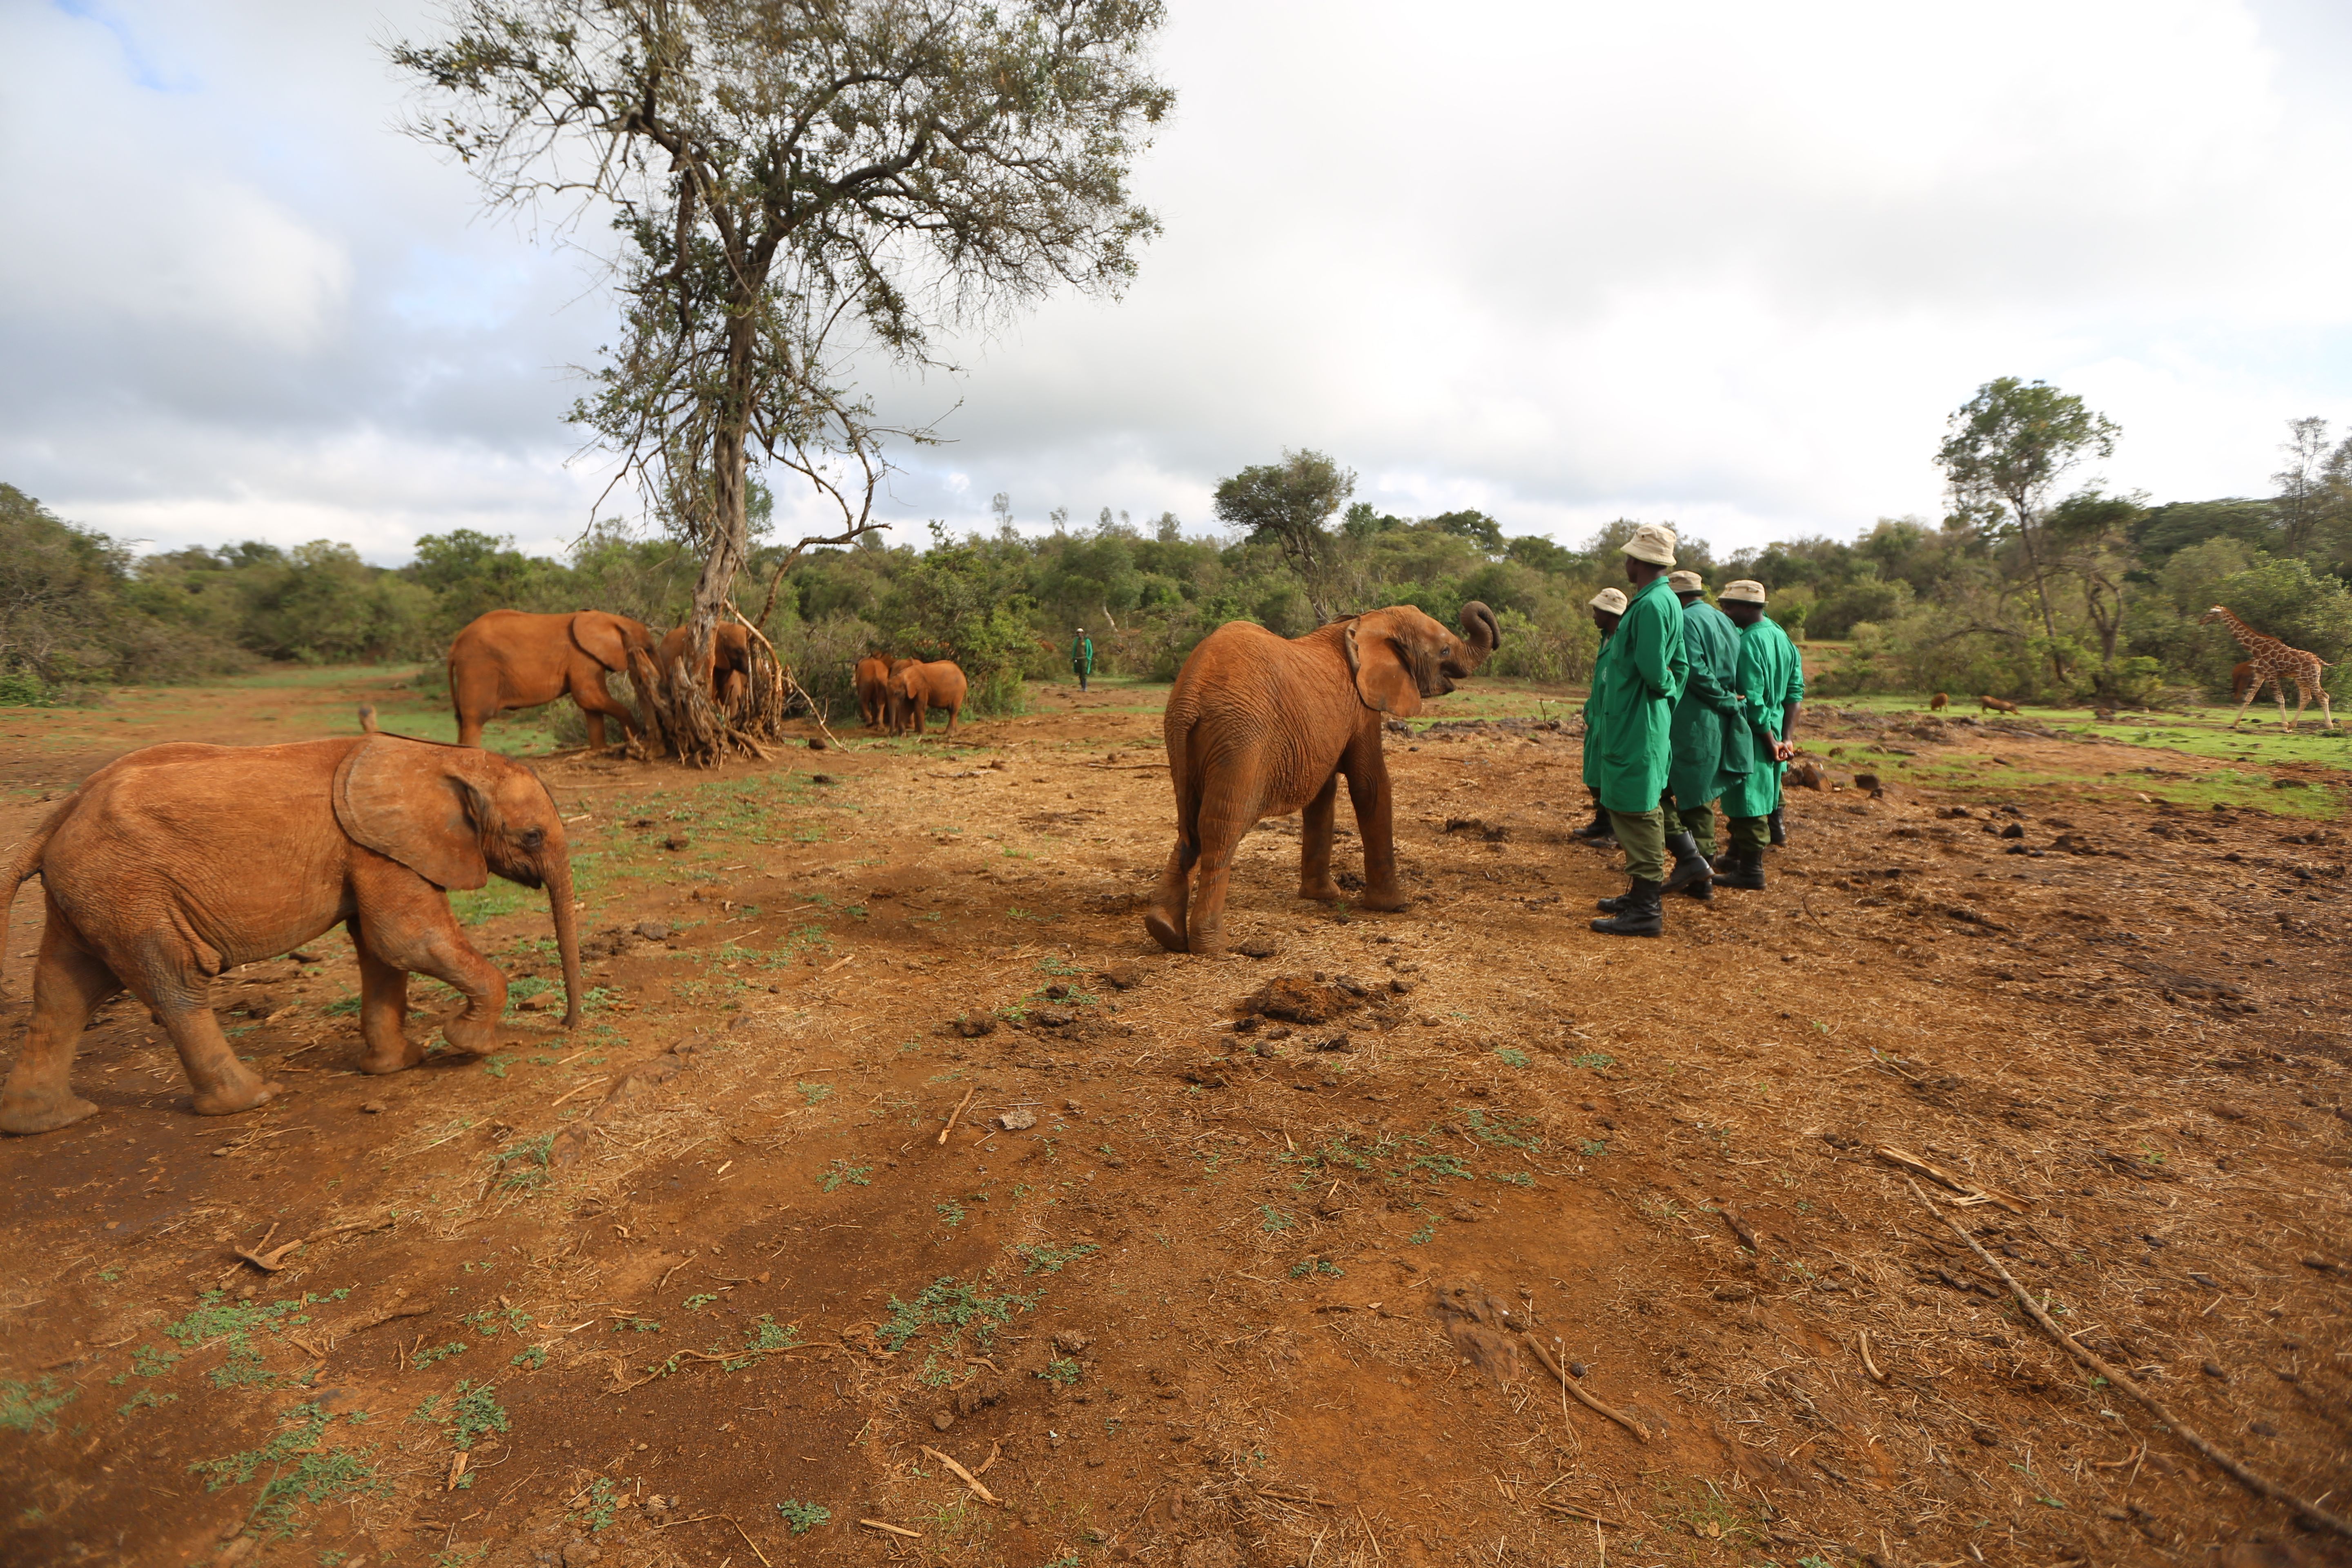 Keepers and elephants at the David Sheldrick Wildlife Trust elephant nursery. Image by Janelle Richards . Kenya, 2017.

